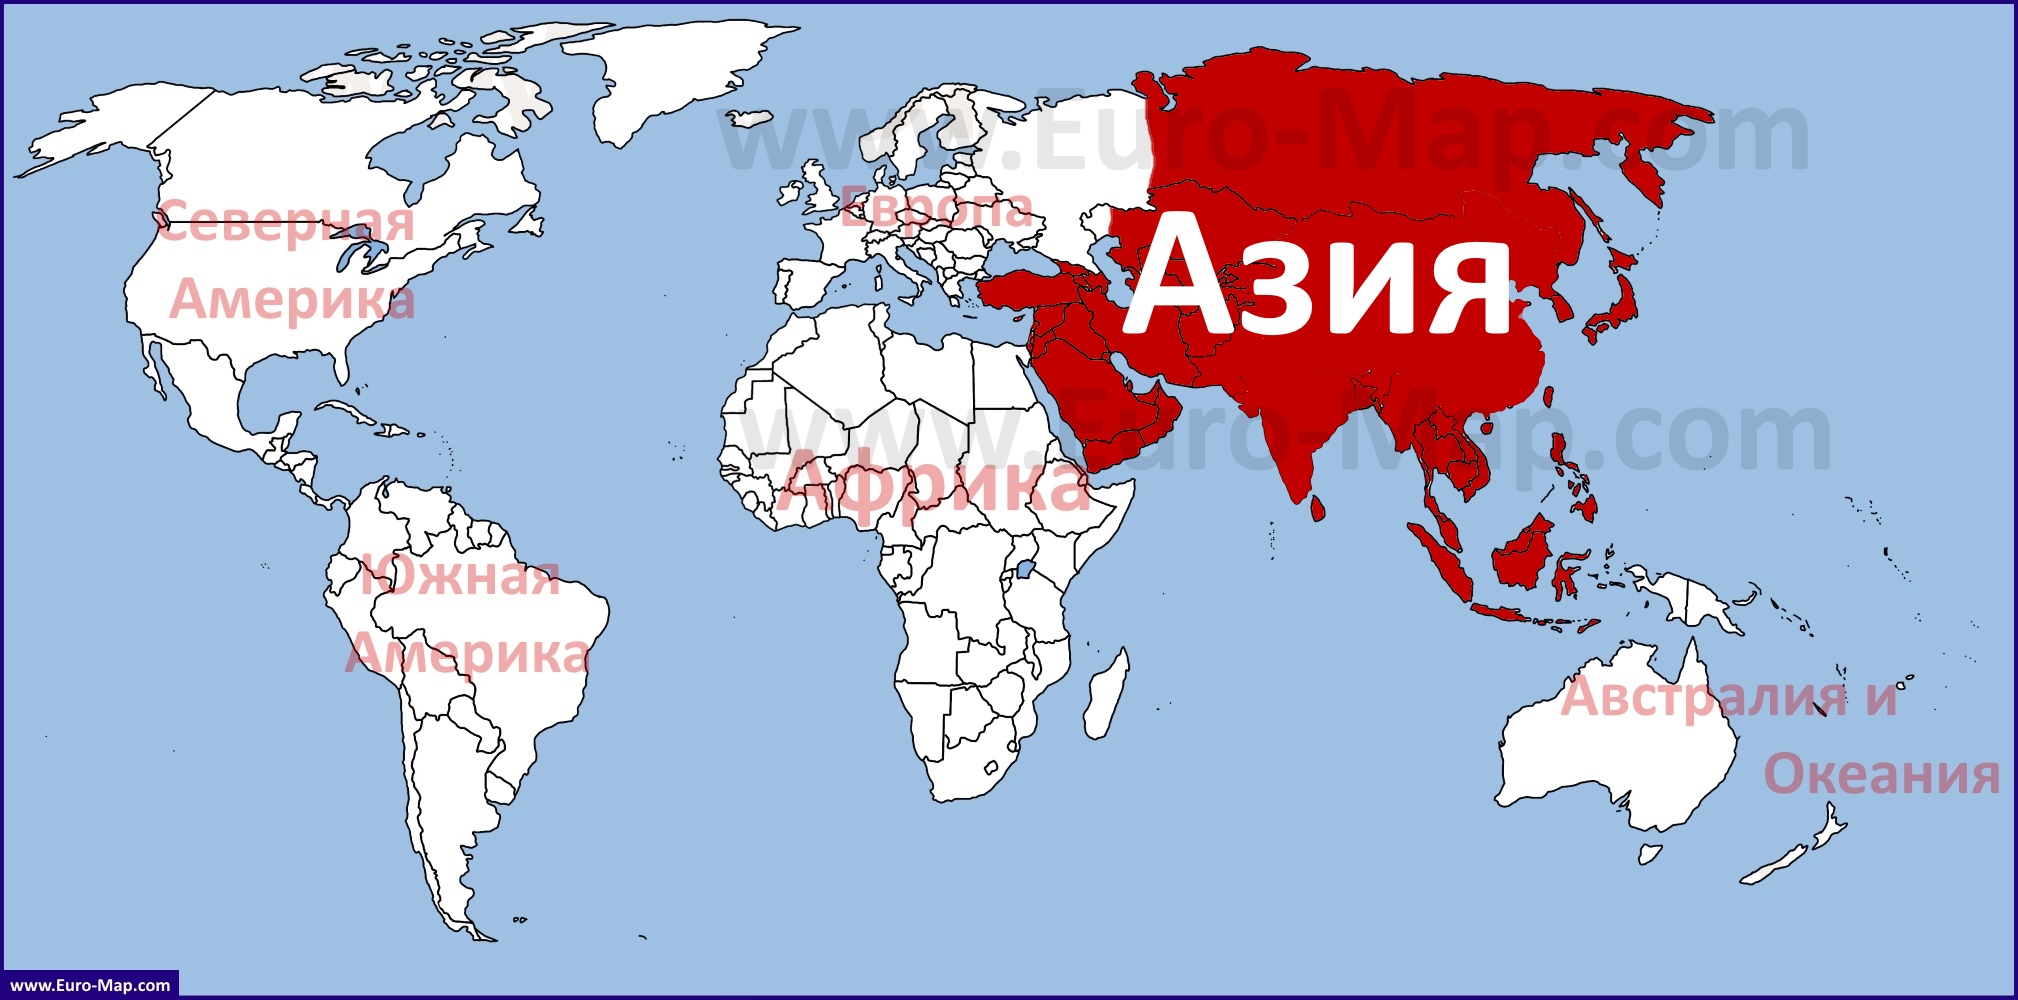 Asia Karta 83